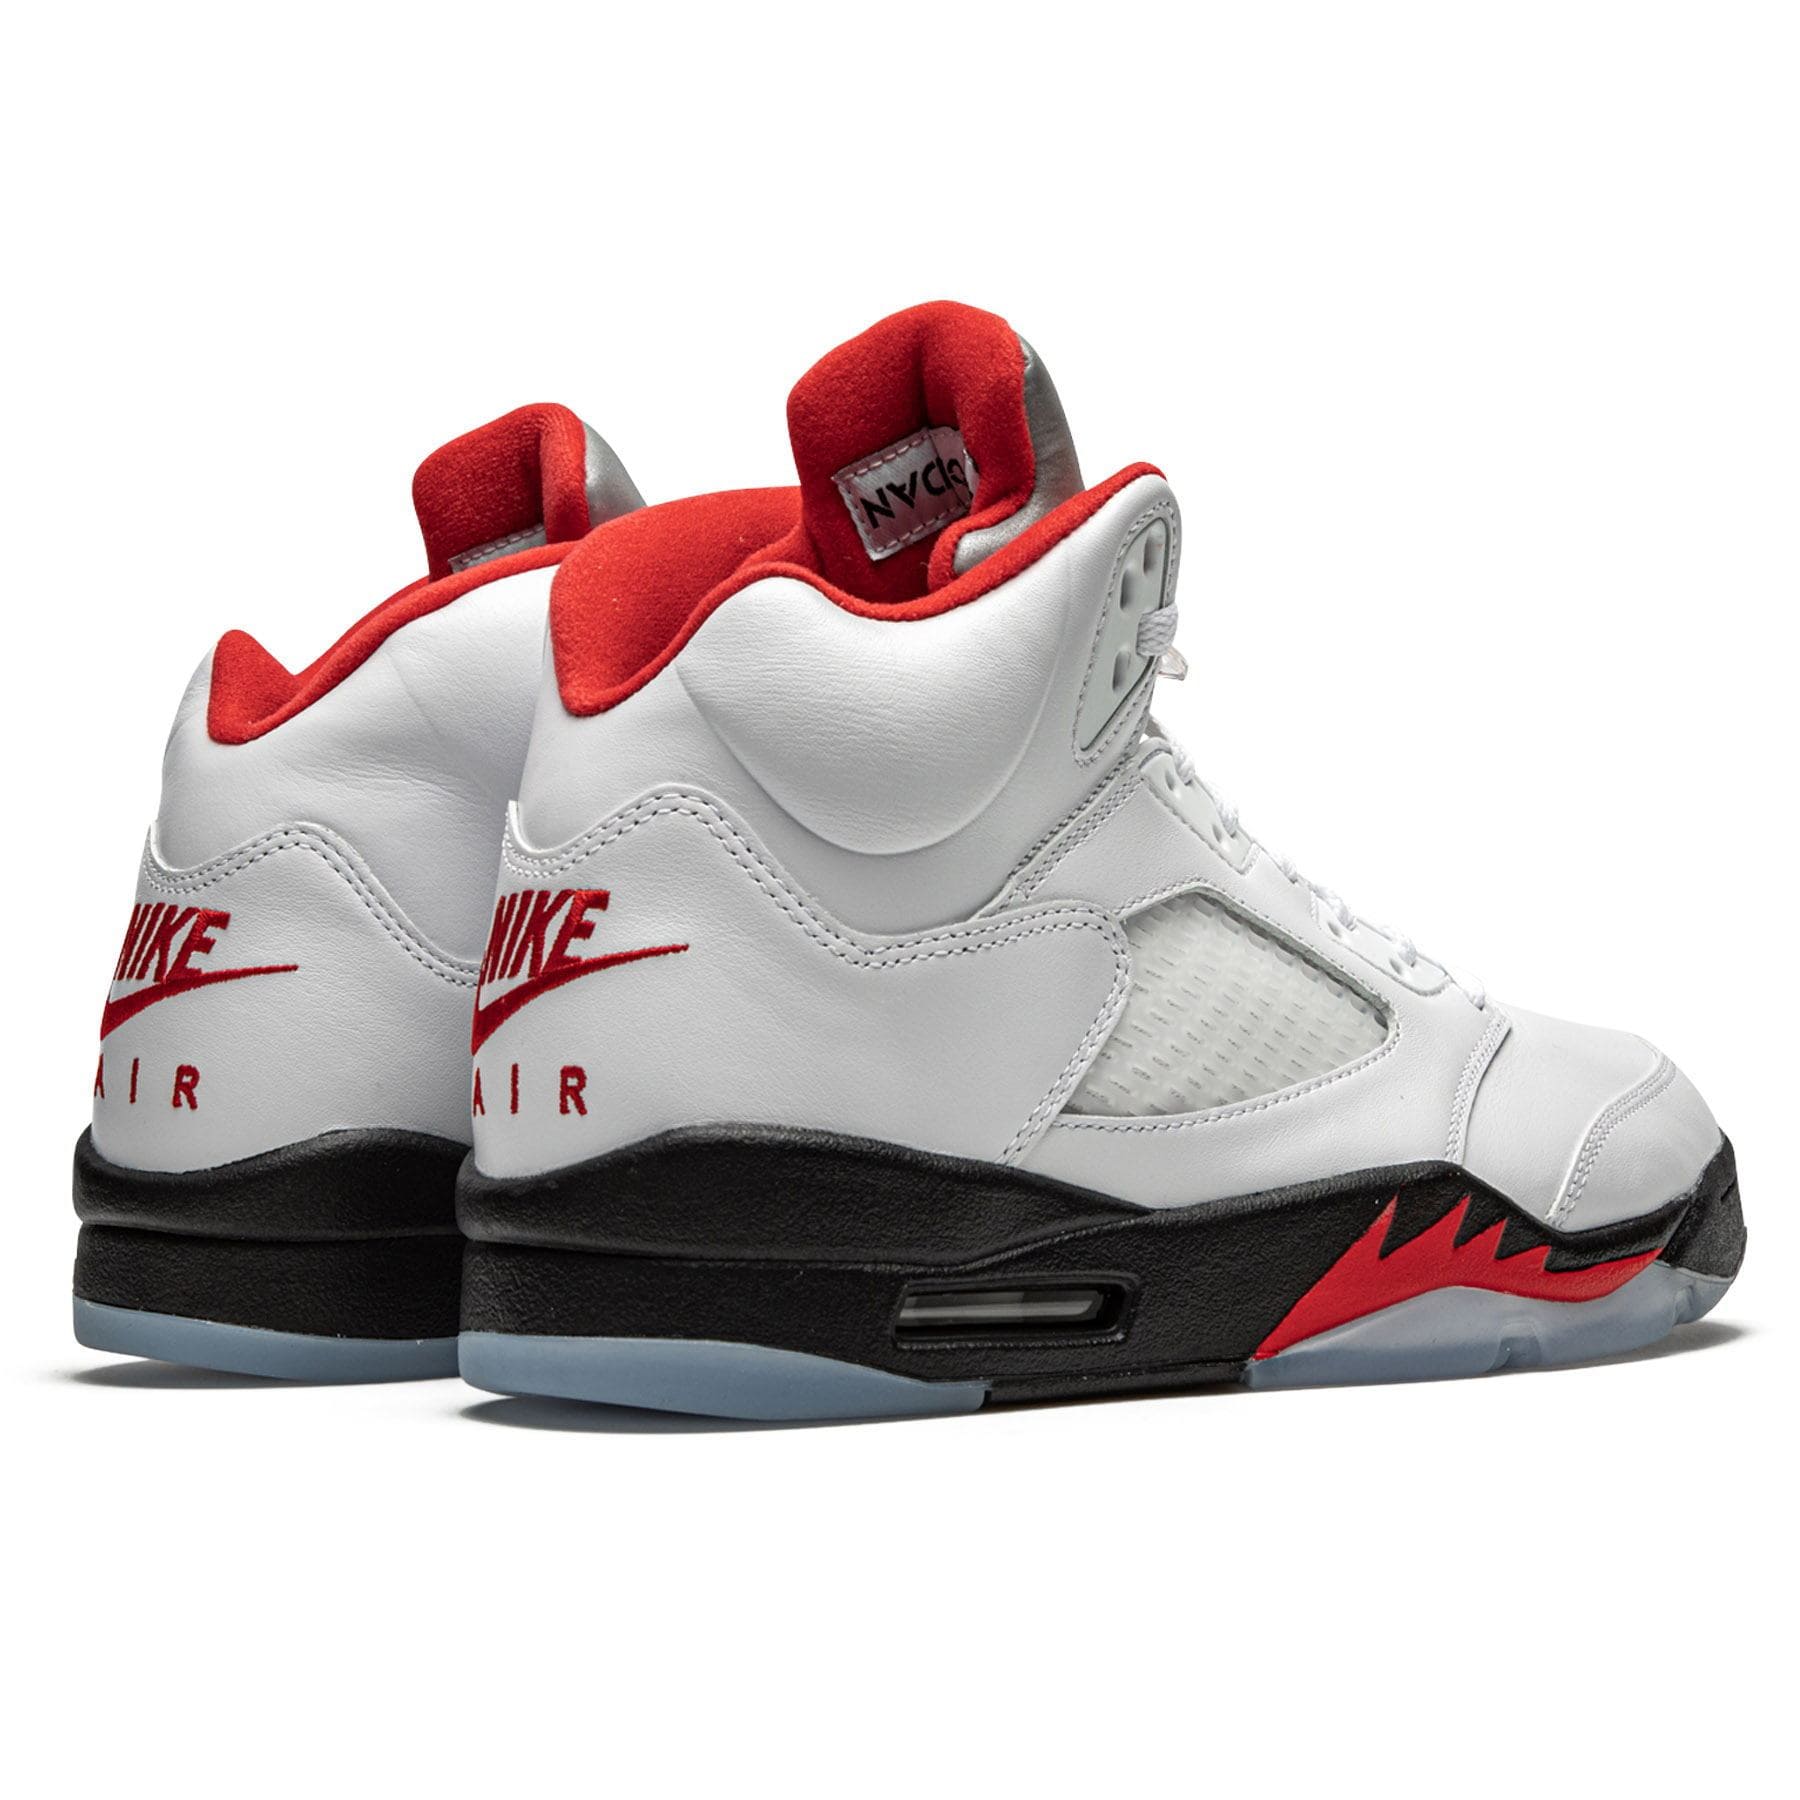 Air Jordan 5 Retro 'Fire Red' 2020 — Kick Game